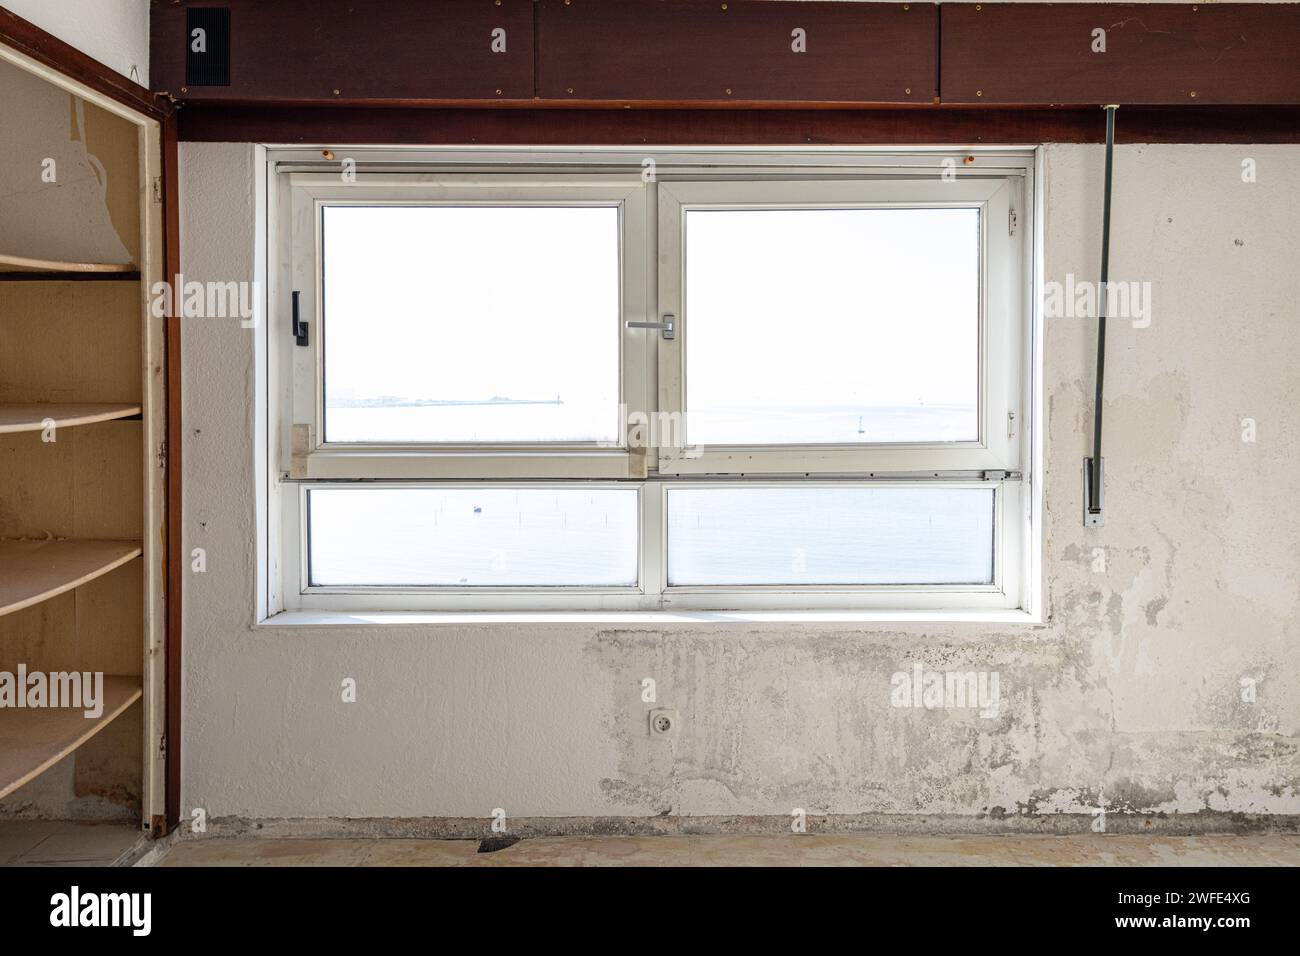 Vue intérieure d'une fenêtre endommagée dans une pièce âgée prête à être rénovée. Concept d'amélioration de la maison Banque D'Images